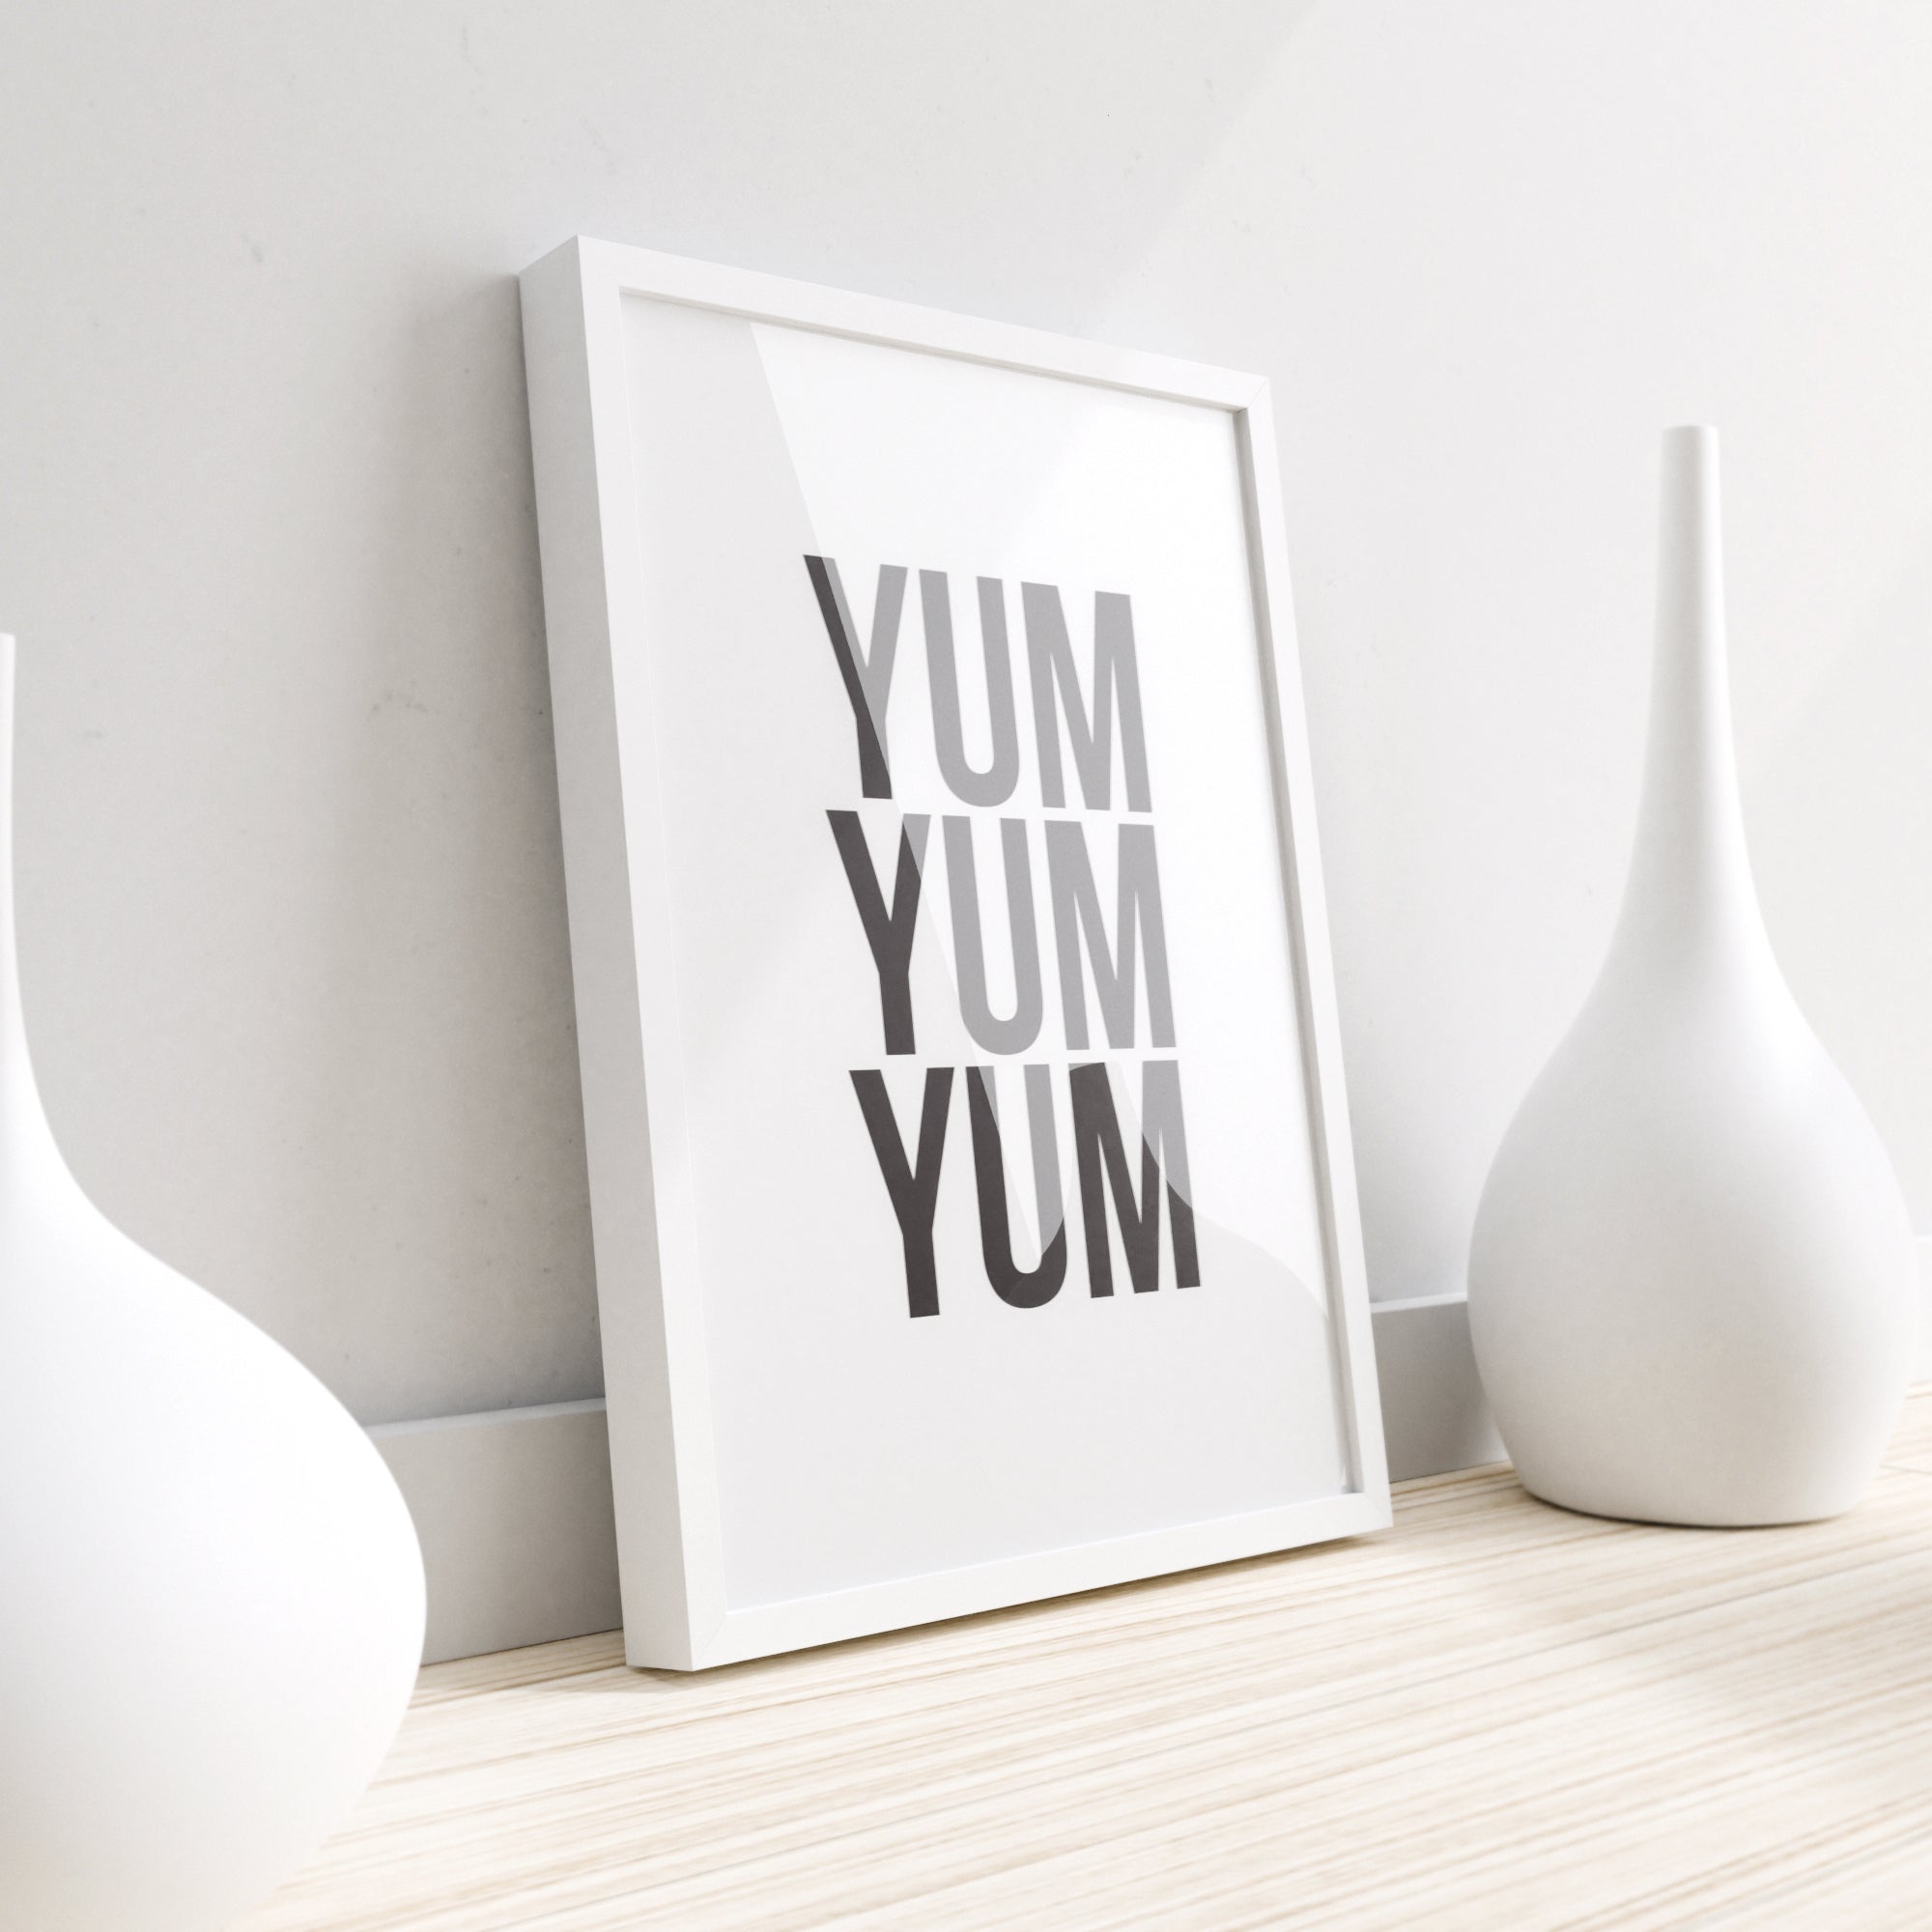 Yum Yum Yum - Küchenwanddekor, Küchenwandkunst, lustige Küchendrucke-1